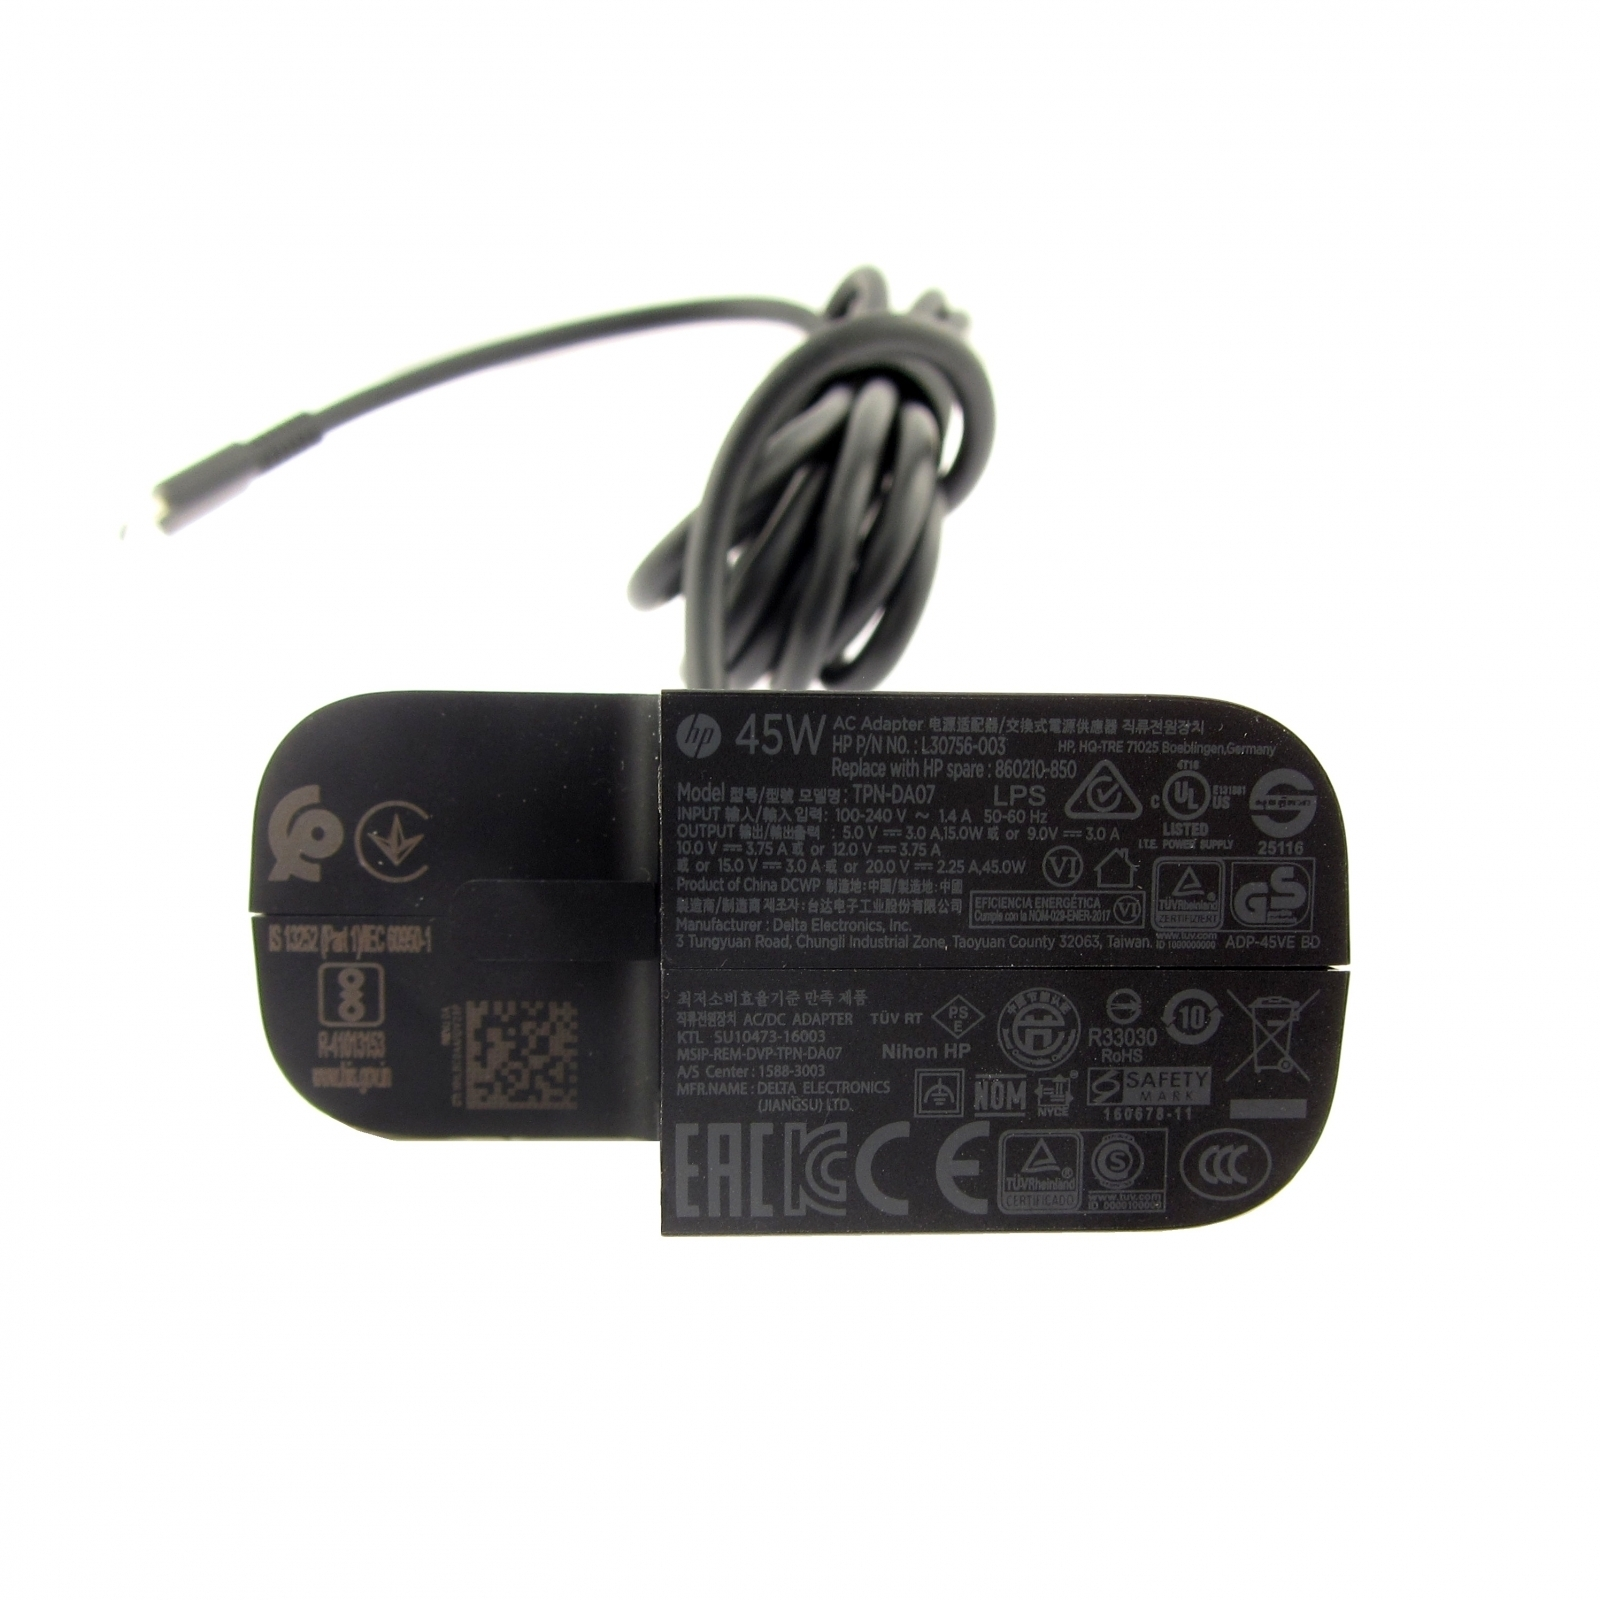 Original HP Netzteil USB-C 1HE07AA#ABB Watt 45